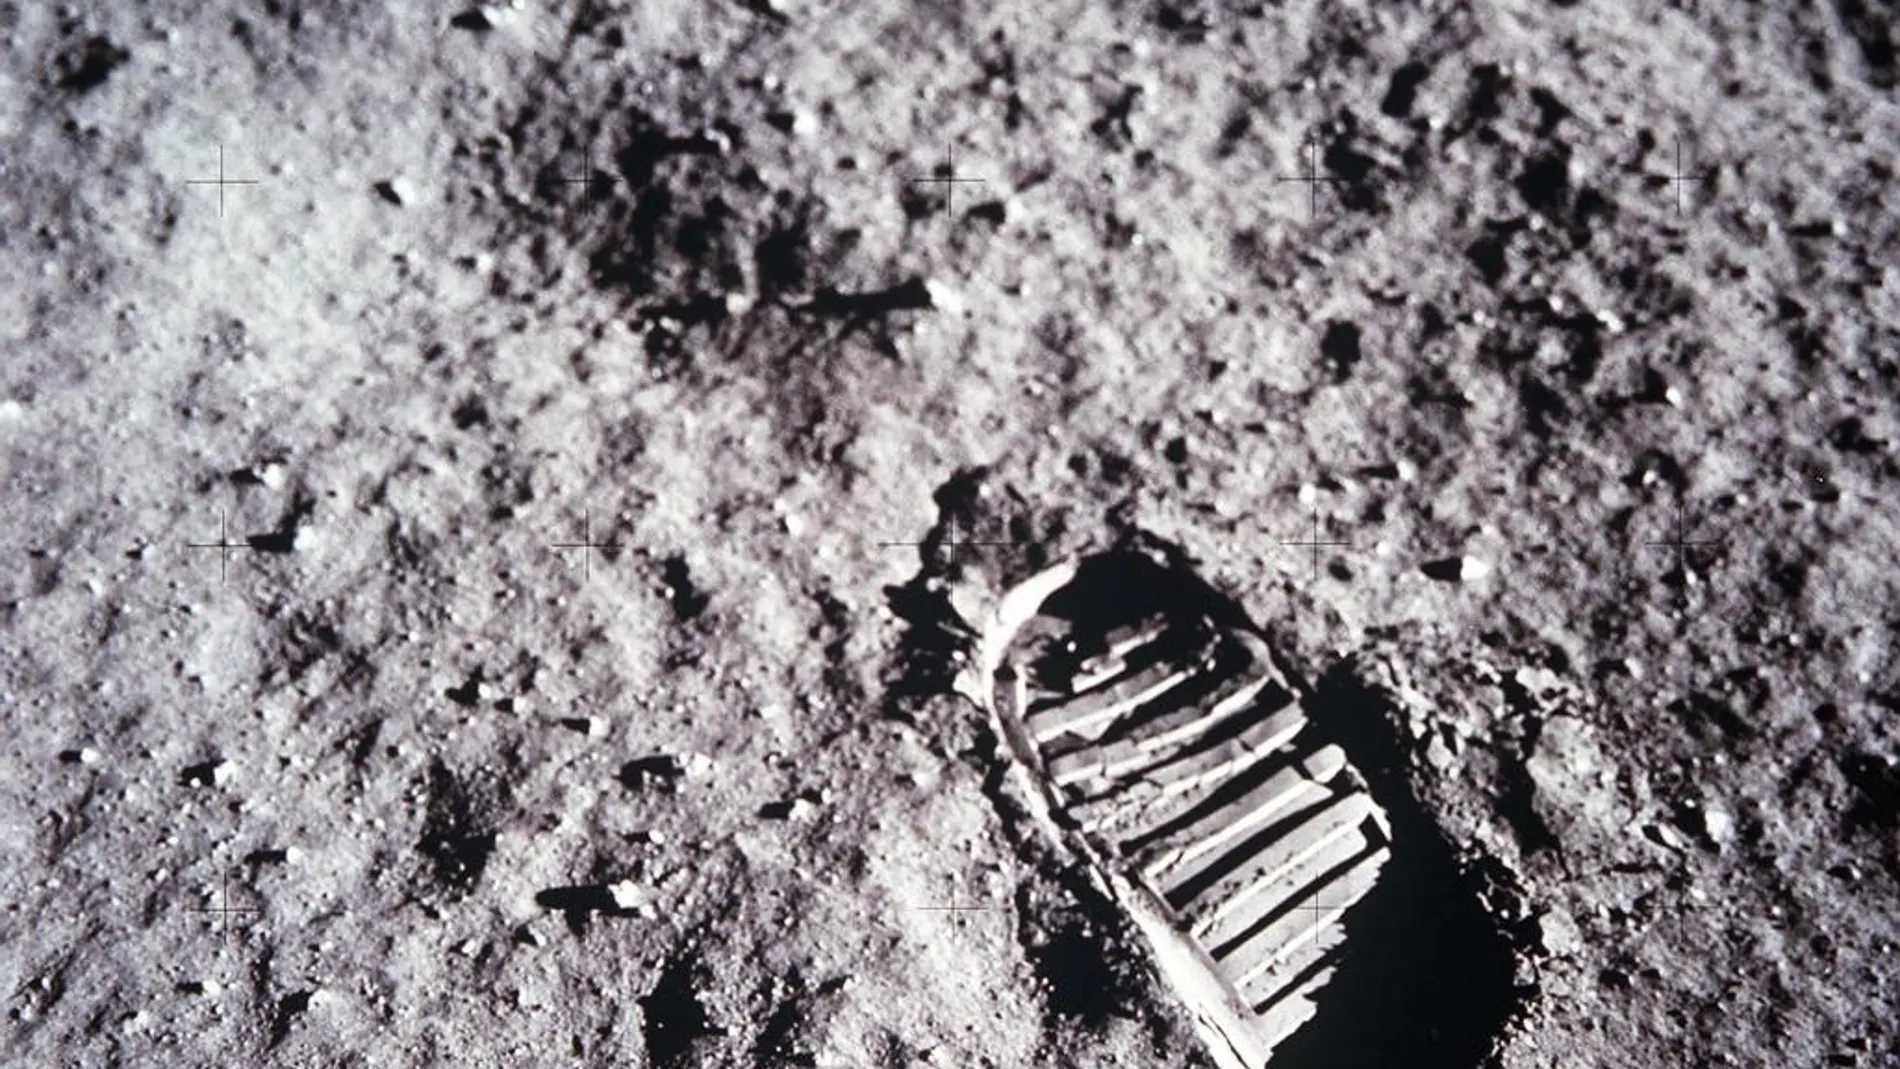 La huella de pisada del astronauta Buzz Aldrin sobre la superficie lunar.